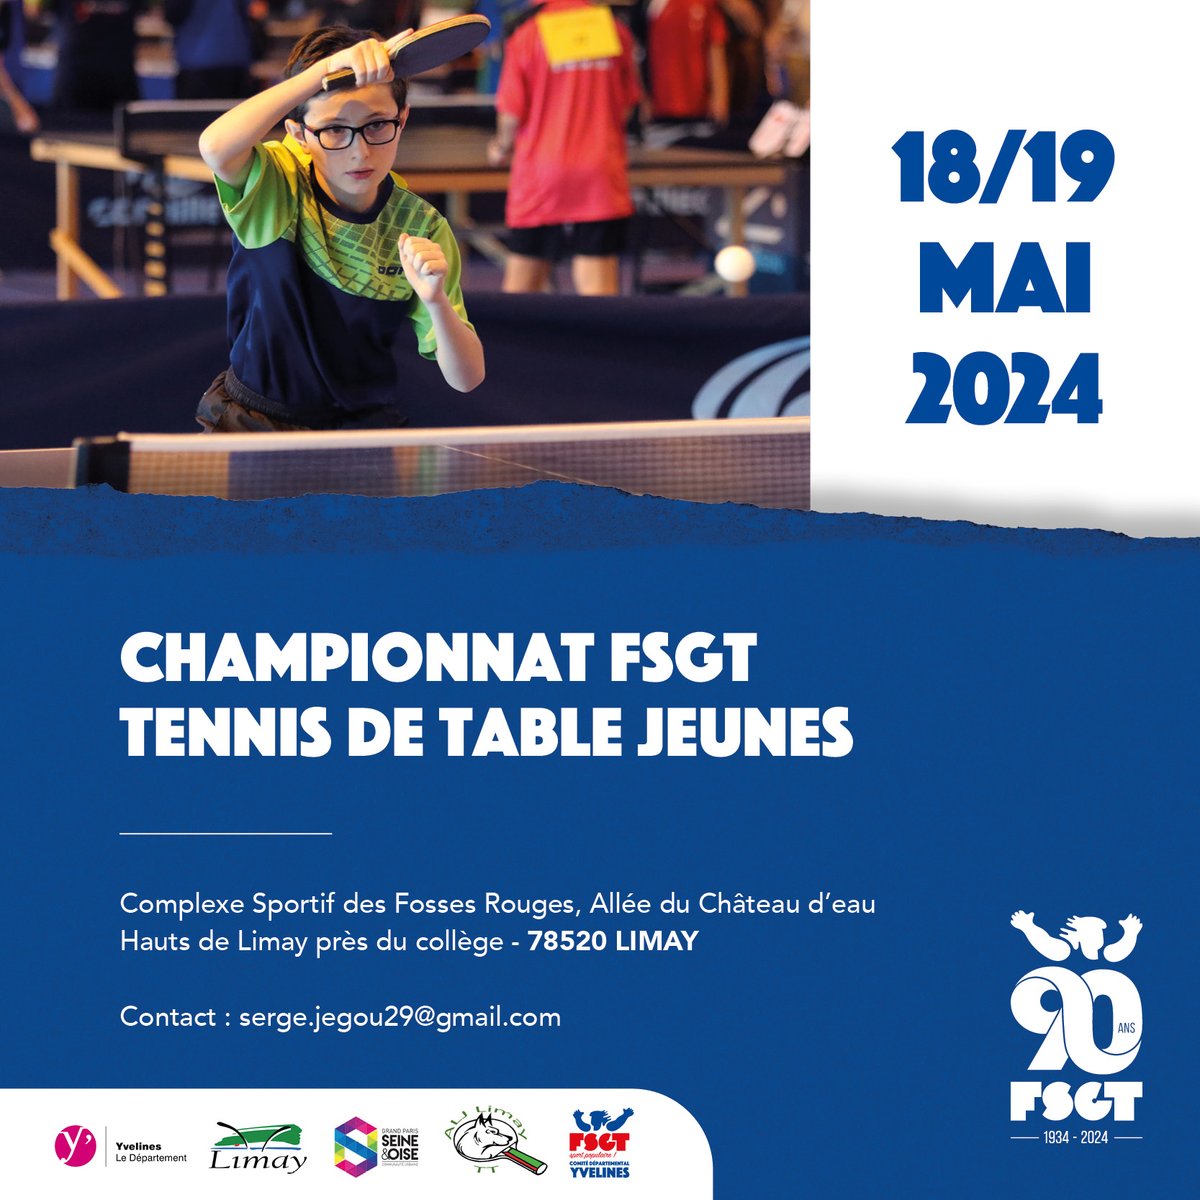 La #FSGT a le plaisir de vous annoncer la tenue du championnat de #tennisdetable jeunes 2024
Celui-ci aura lieu le 18 et 19 mai 2024 dans la Ville de @VilledeLimay  (@Les_Yvelines )
Nous vous attendons nombreux pour ce championnat.
Toutes les infos : fsgt.org/2024/04/17/ten…